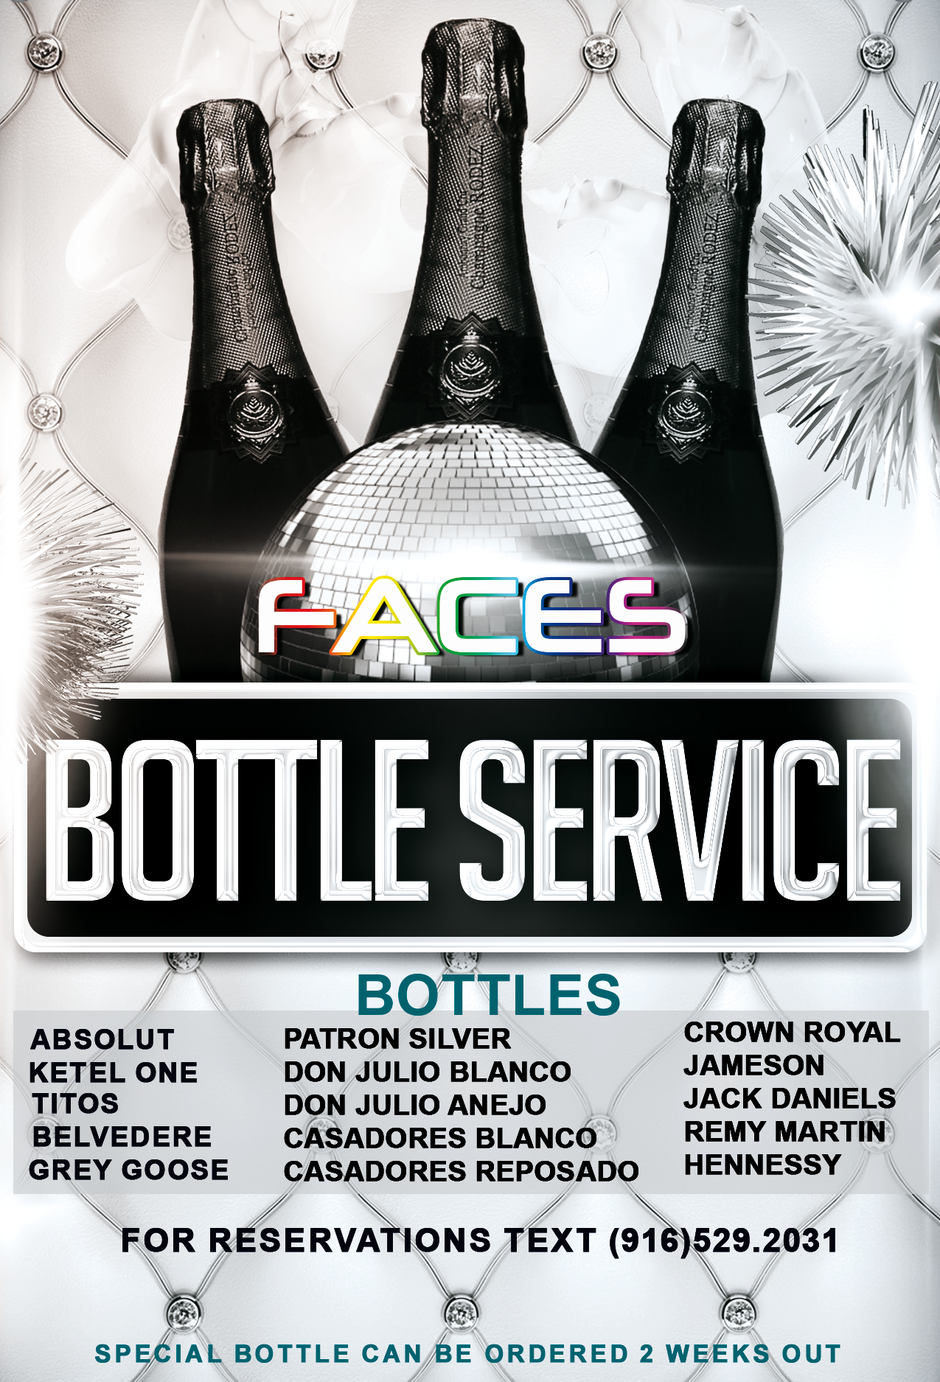 Faces Bottle Services information